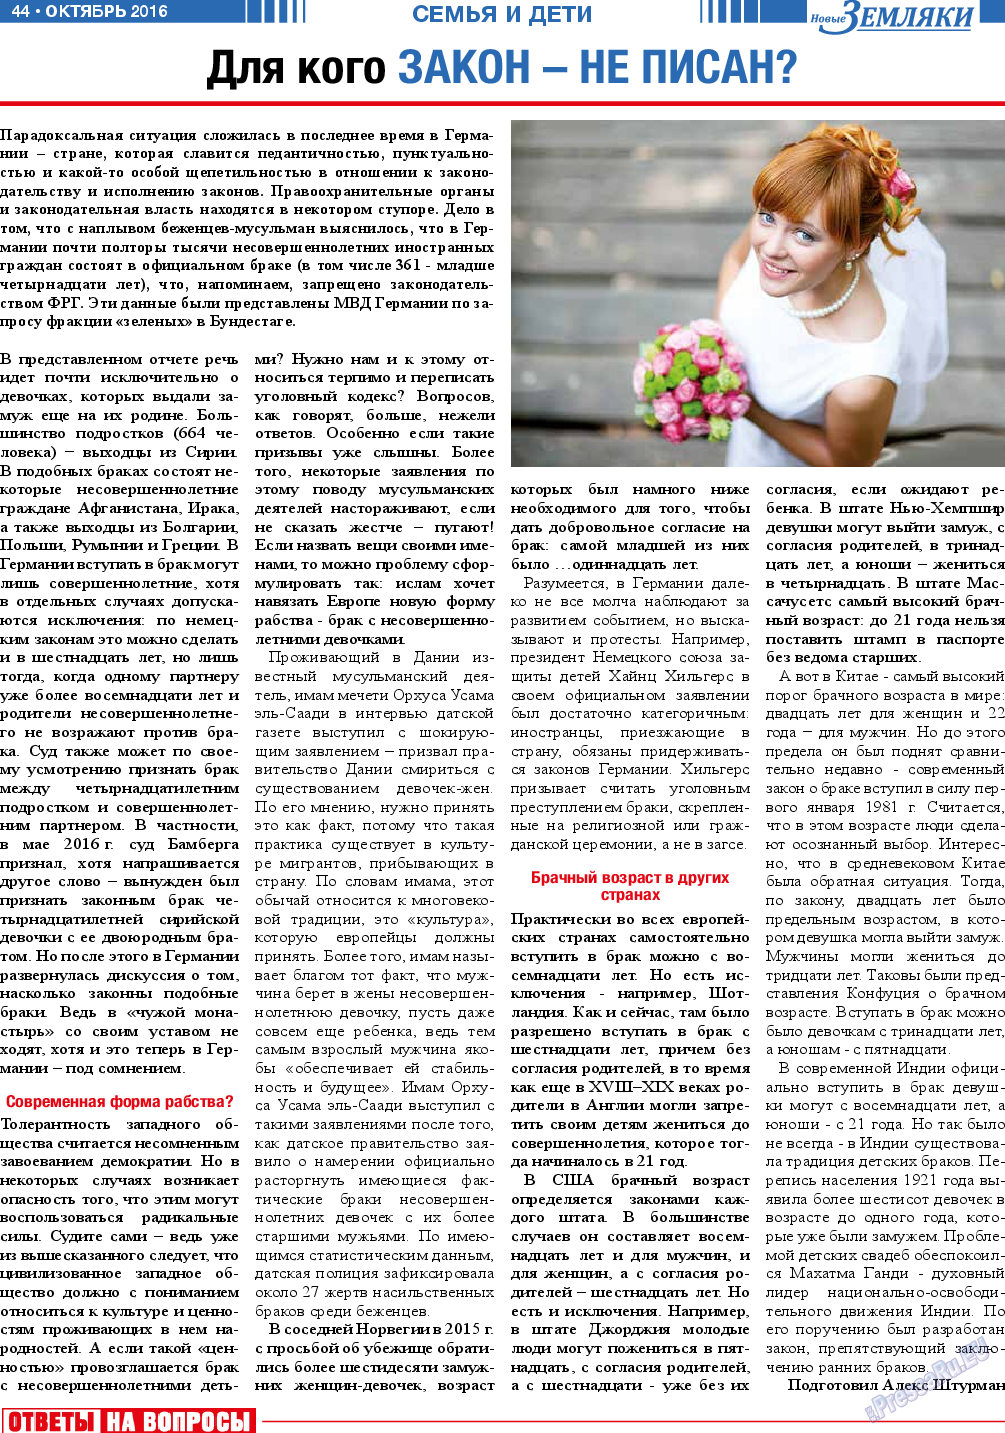 Новые Земляки, газета. 2016 №10 стр.44